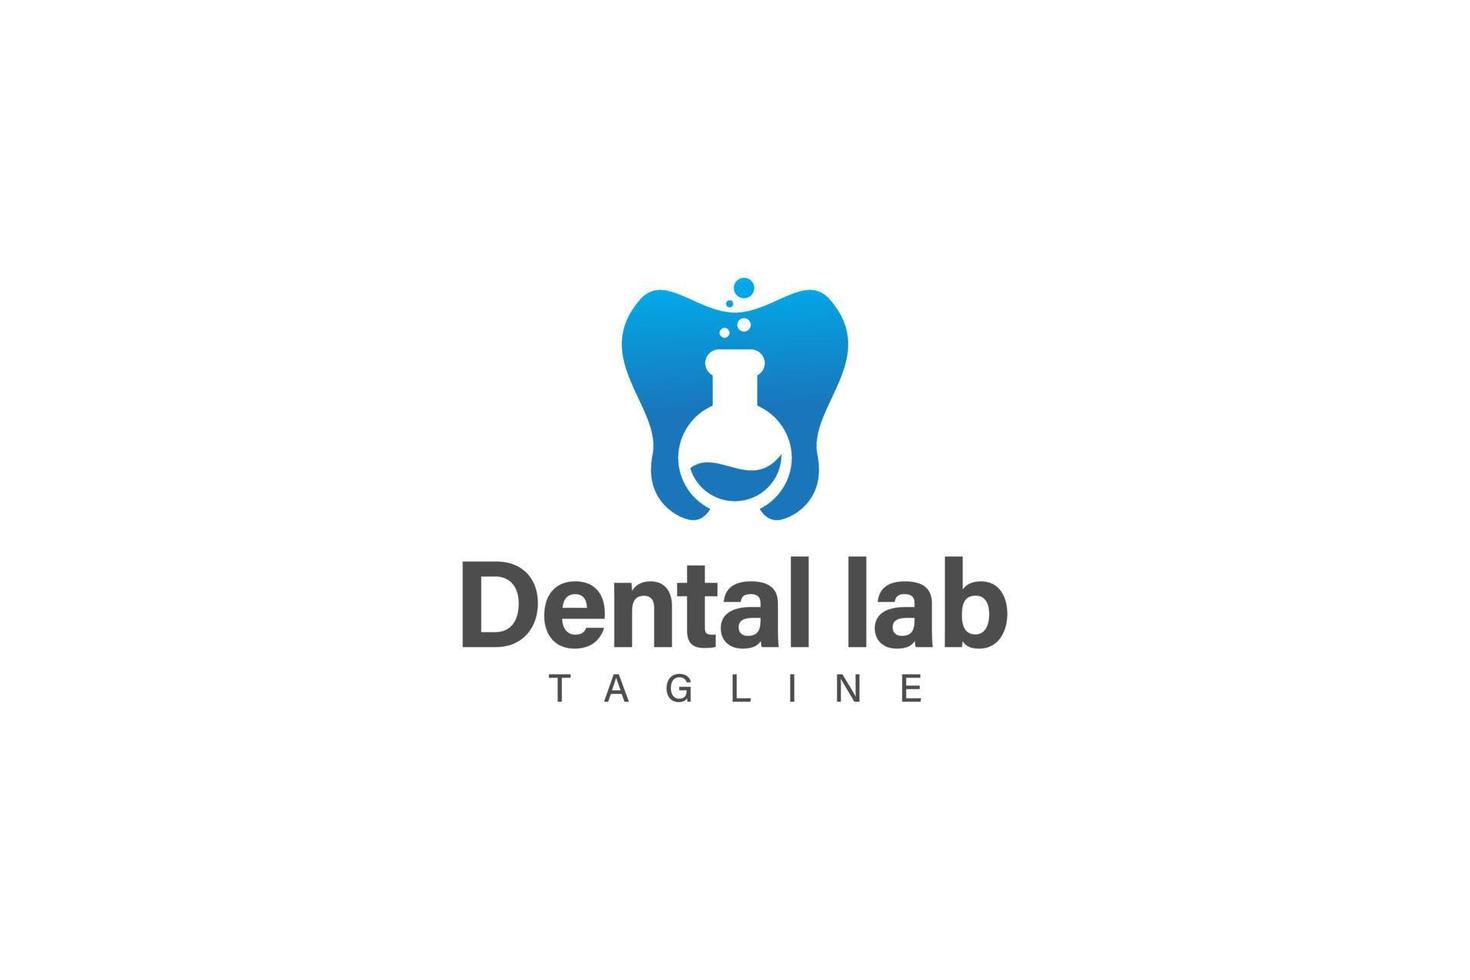 dental labb eller dental vård logotyp design vektor